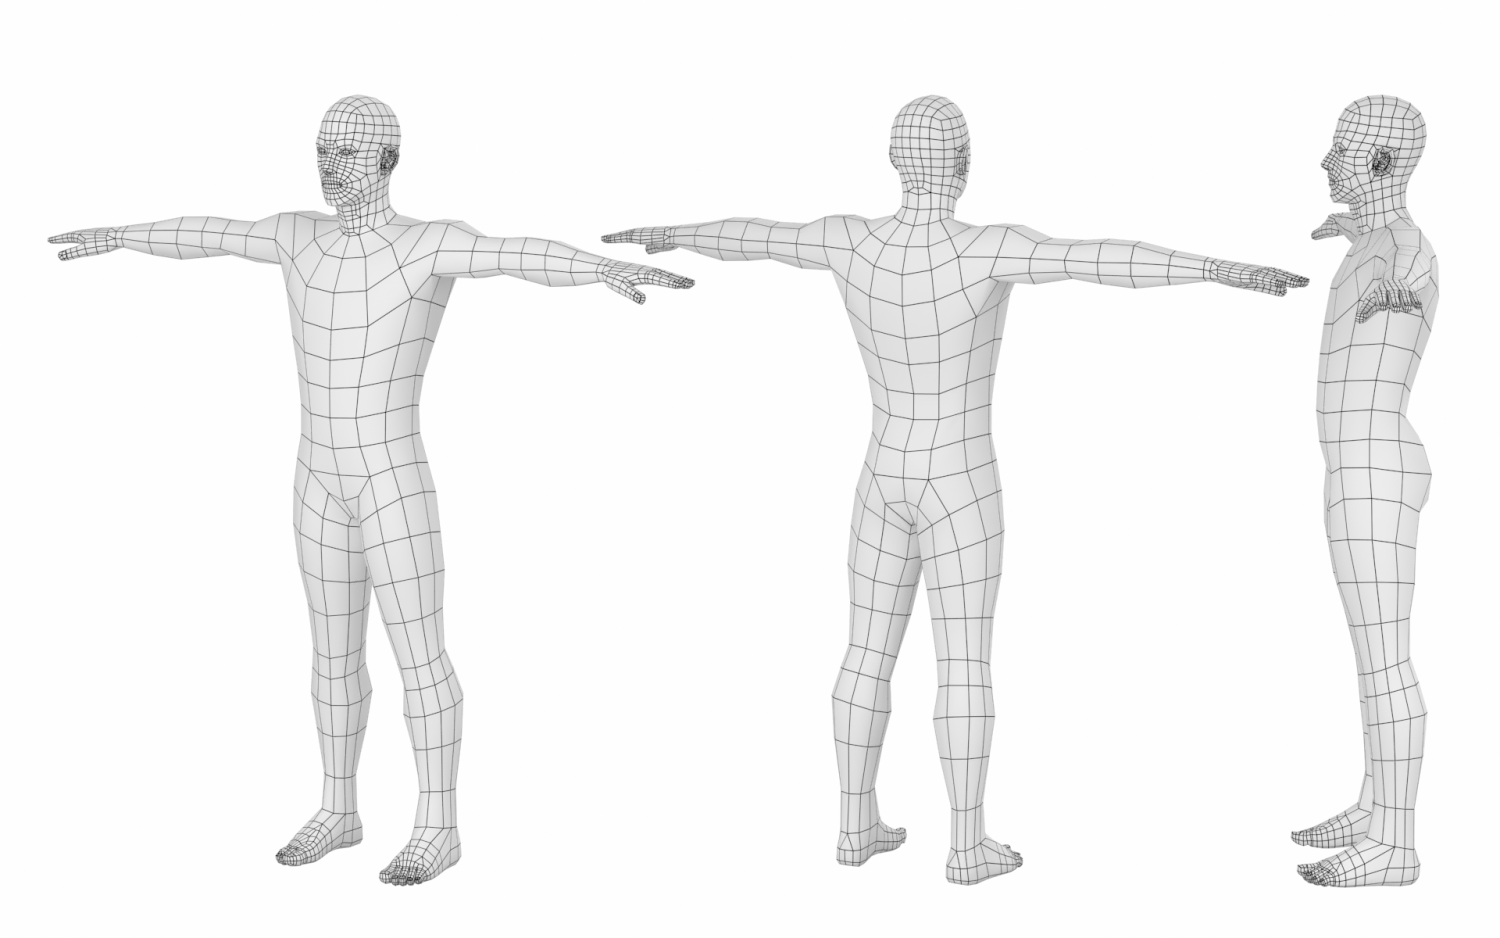 Megumin T-pose 3D model by Eda3DX on DeviantArt